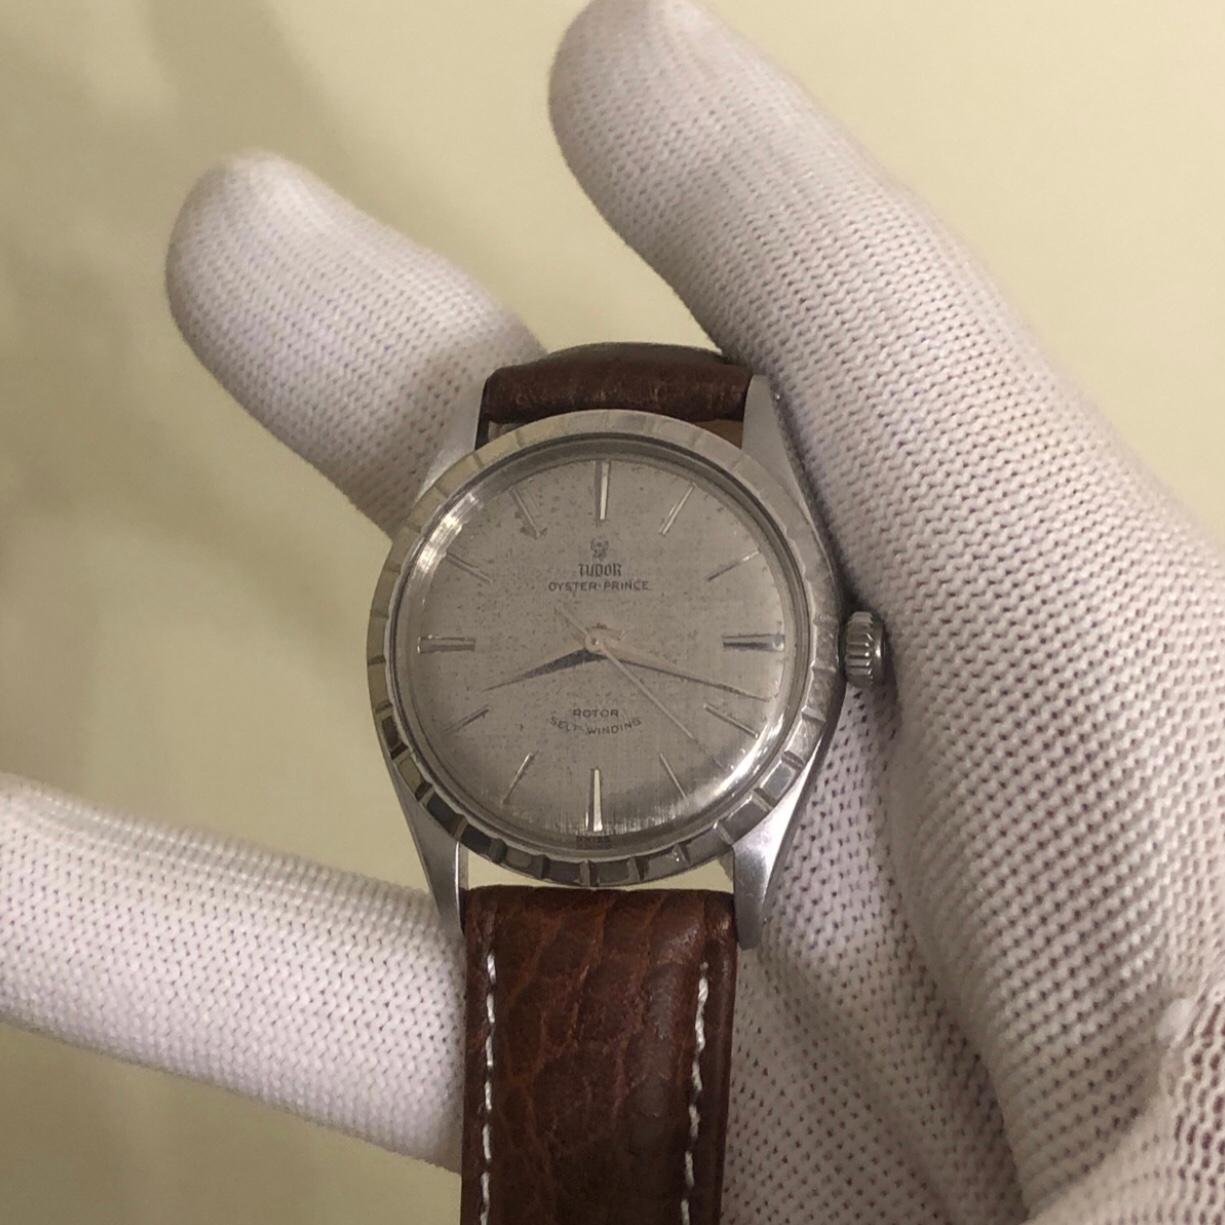 Rolex Tudor Oyster Prince 34mm Stainless Steel Vintage Watch with booklet papers.

Ce garde-temps Rolex Tudor authentique est doté d'une lunette en acier inoxydable de 34 mm et d'une couronne Rolex à double verrouillage. La montre Tudor